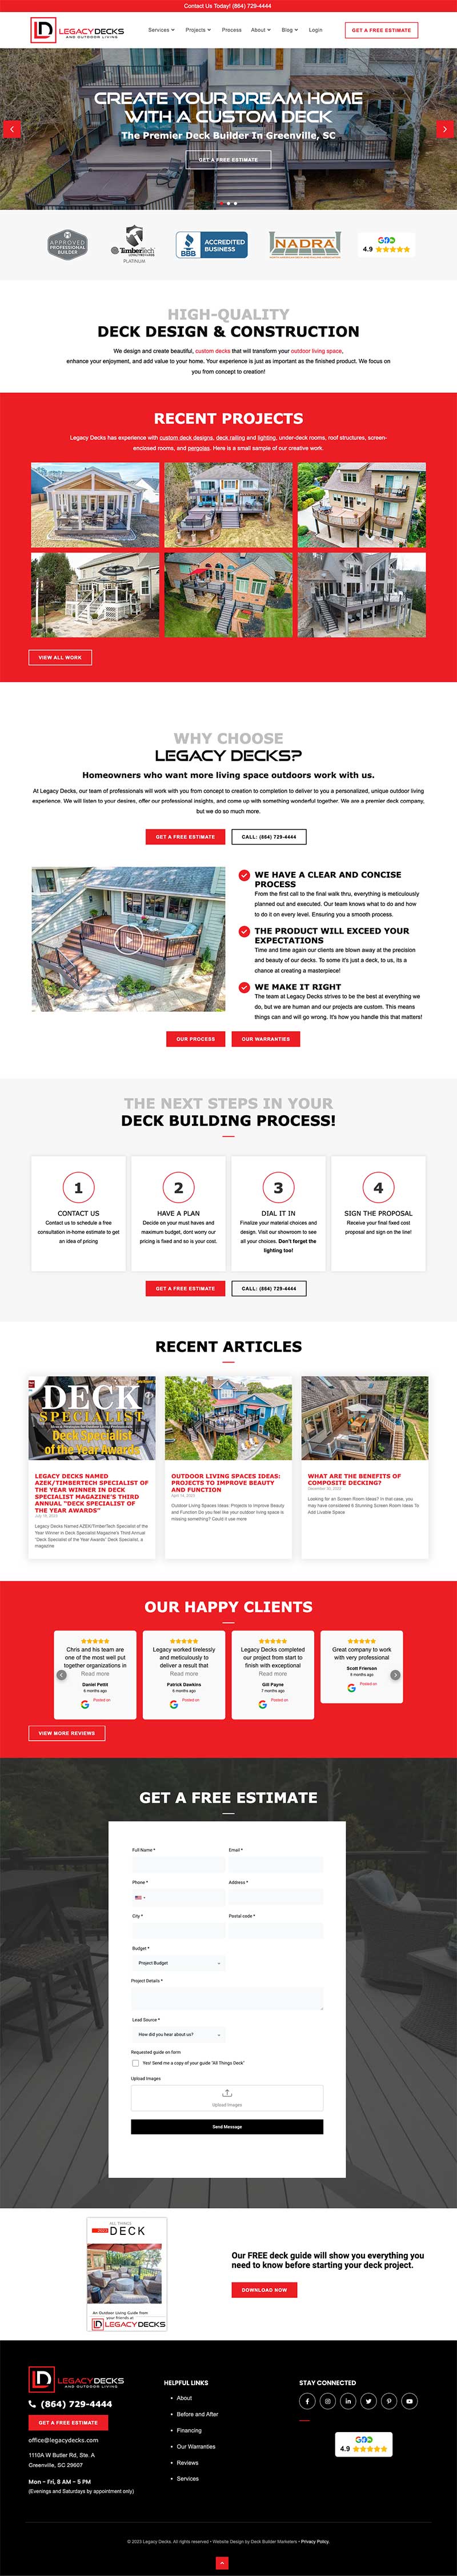 legacy-decks-website design-after